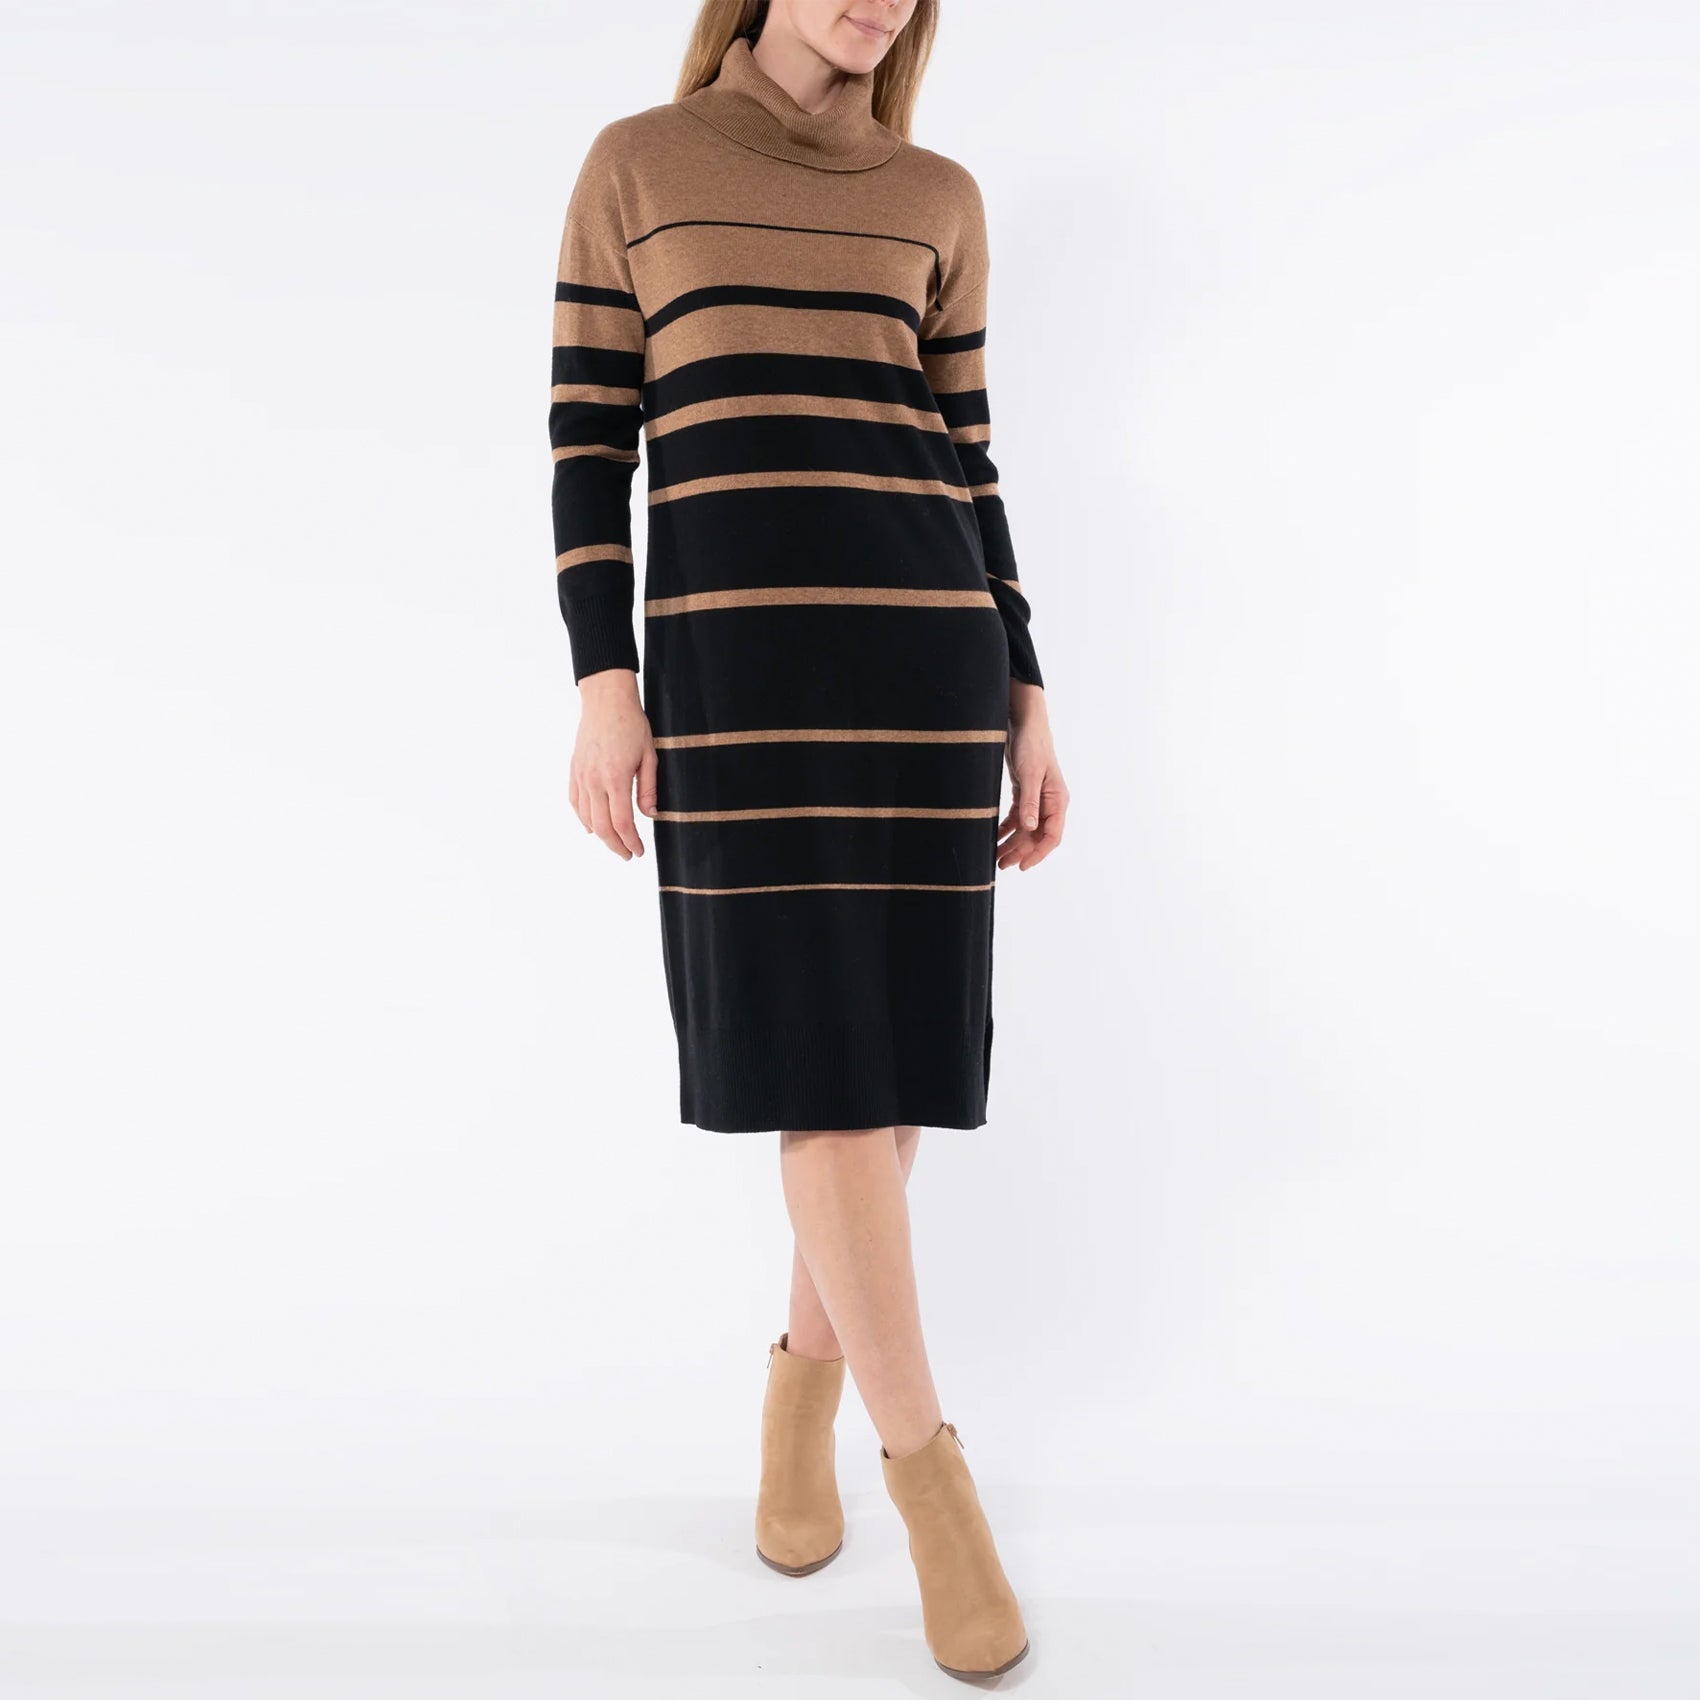 Jump Striped Knit Dress - Caramel & black